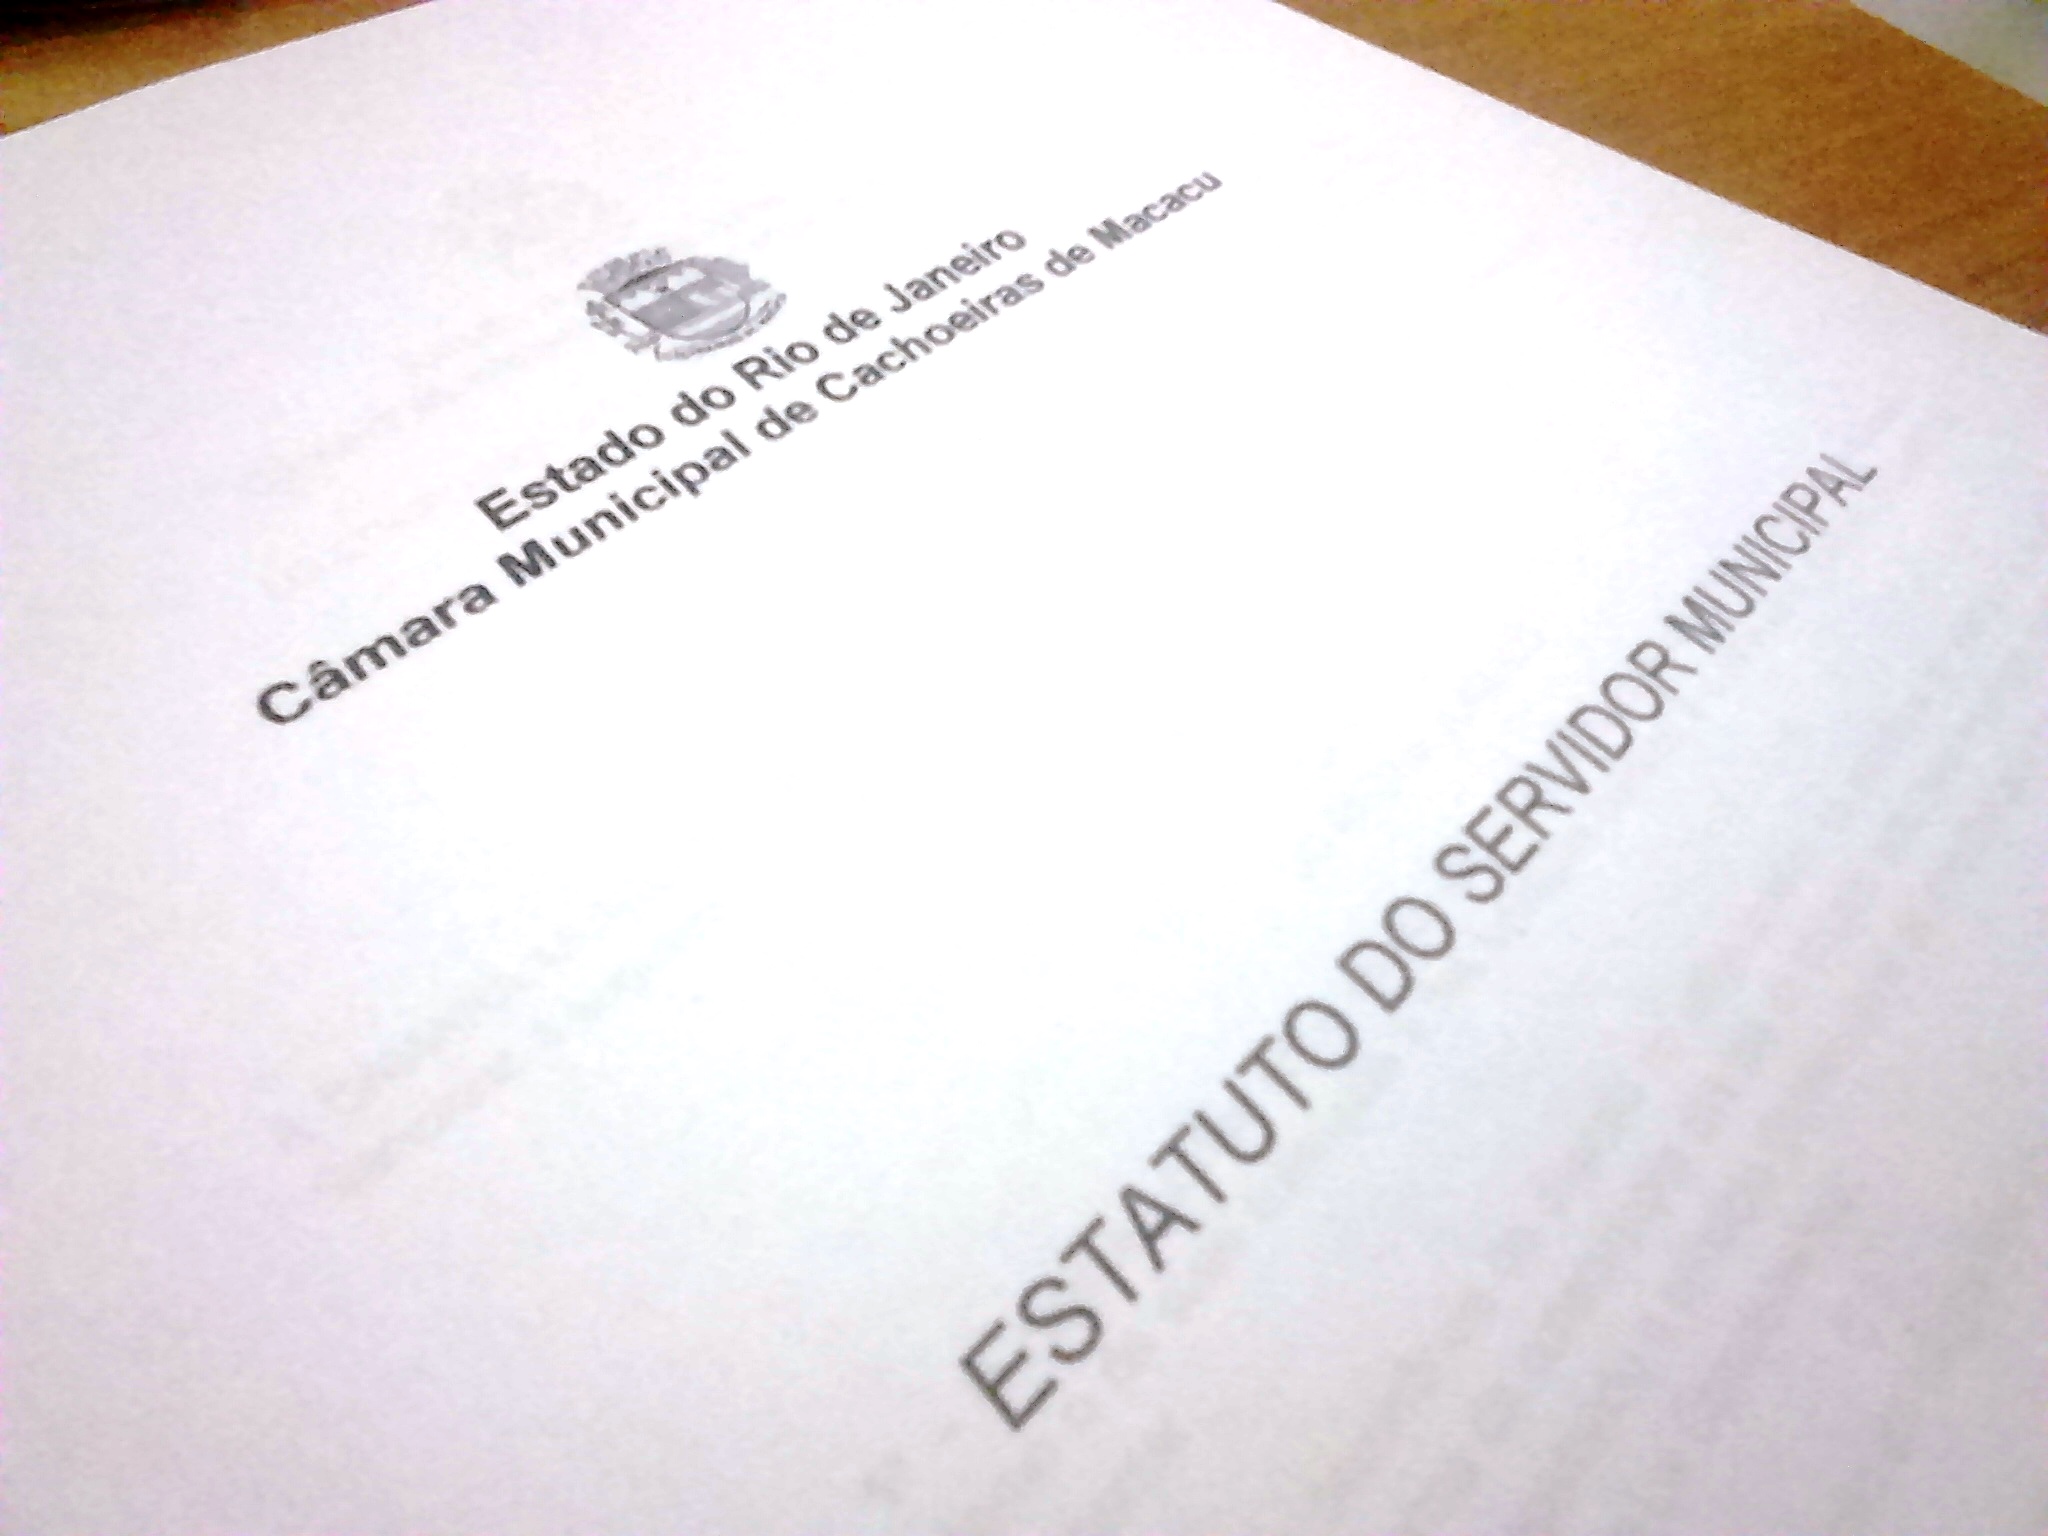 Concursados da Câmara Municipal de Cachoeiras de Macacu têm até 30/06 para entregar documentos